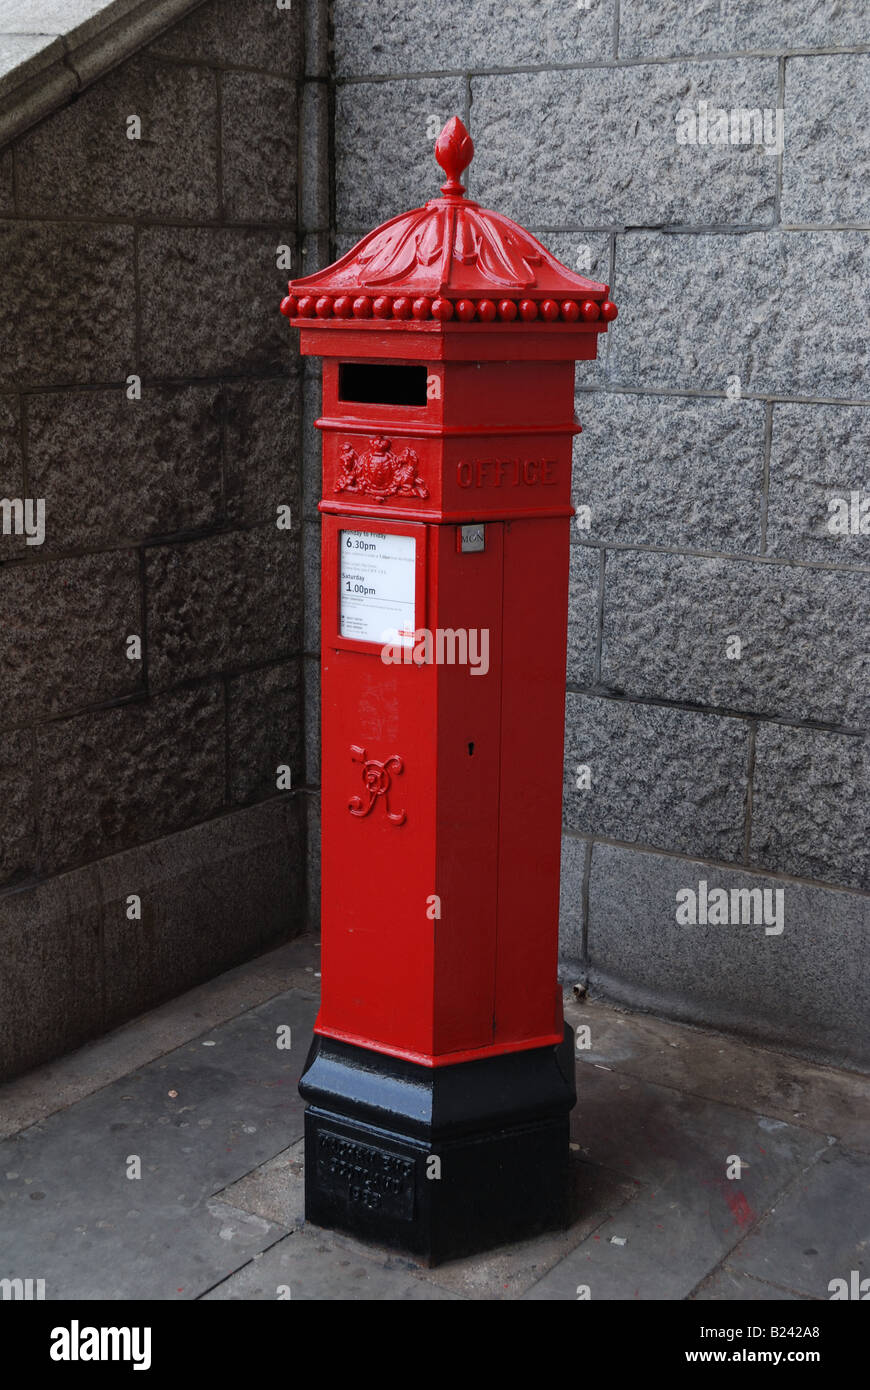 Königliche Post-Briefkasten. In der Nähe von Tower Bridge, London  Stockfotografie - Alamy